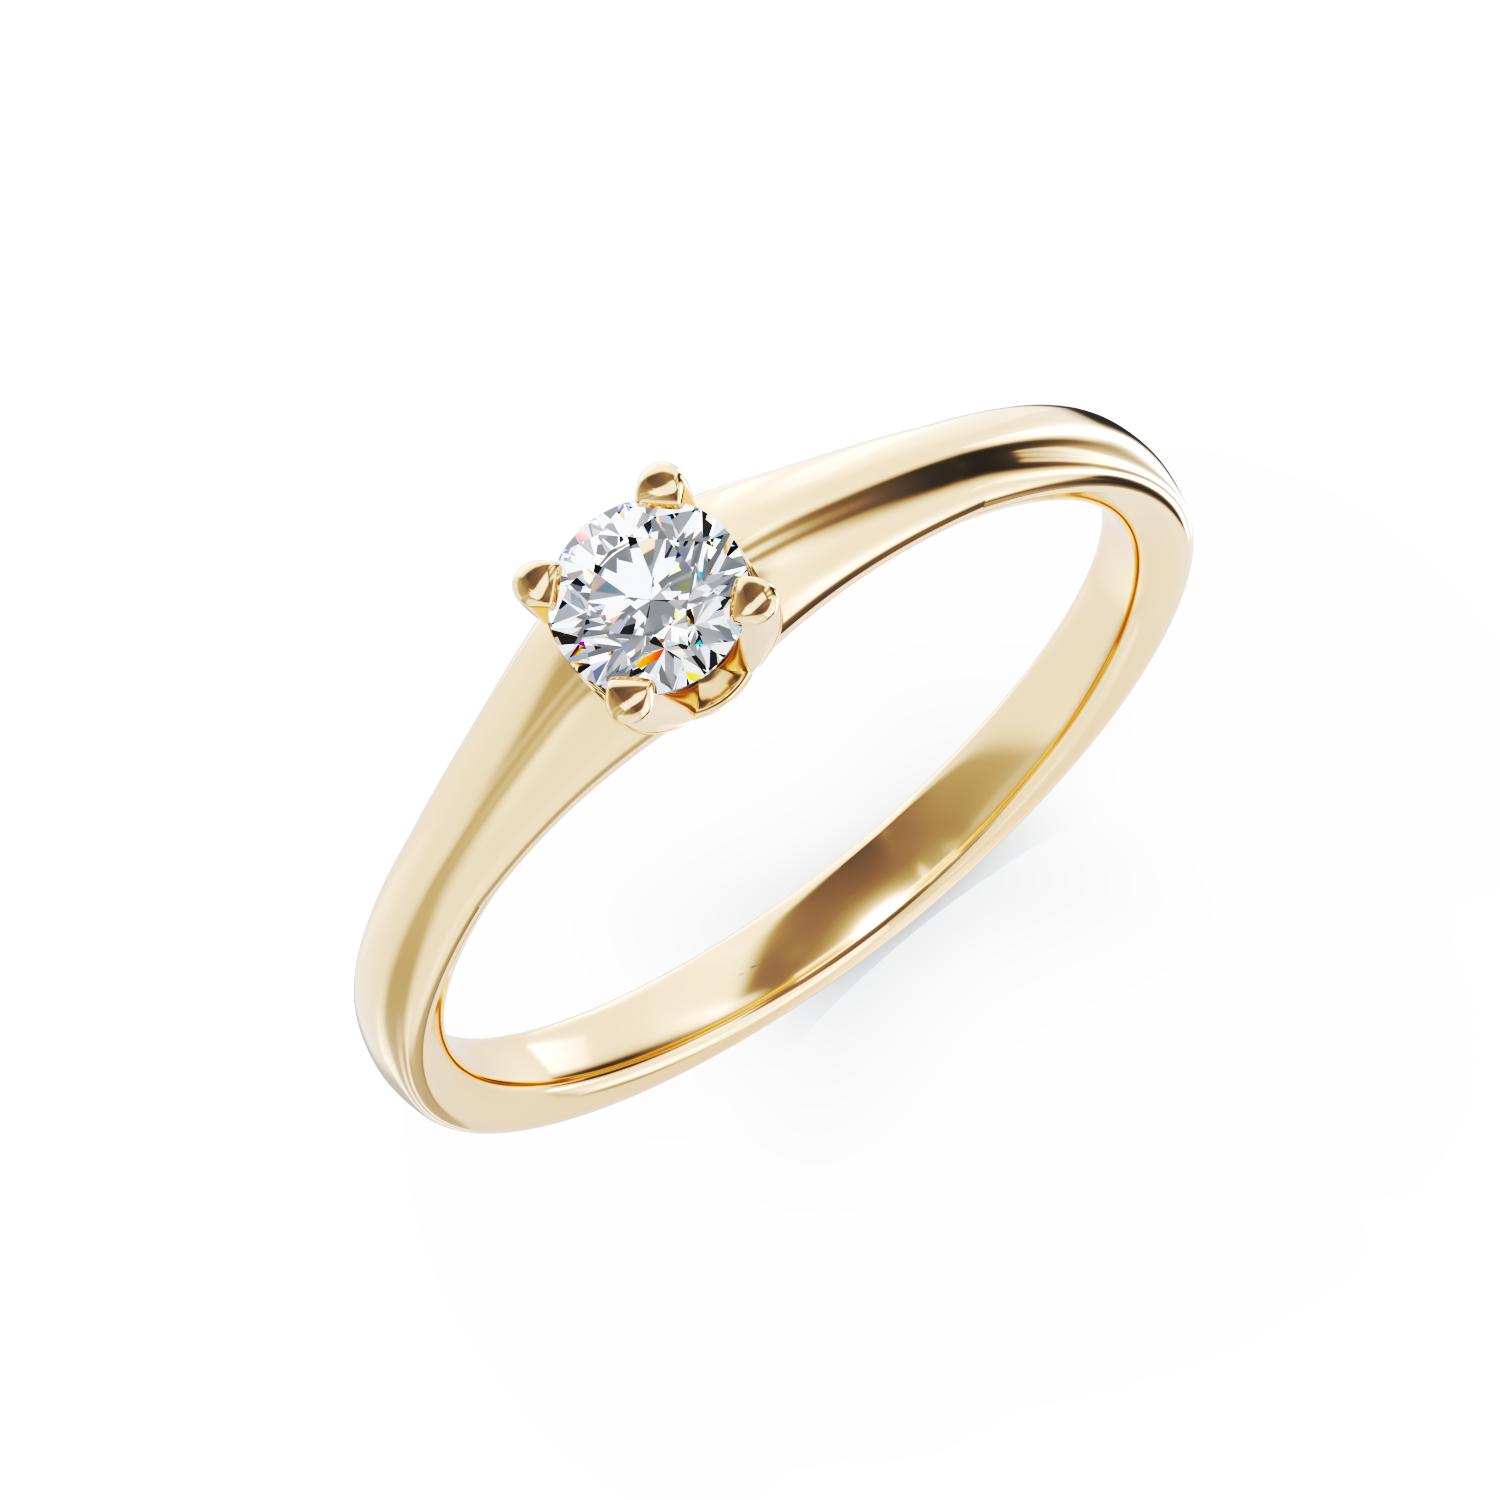 Eljegyzési gyűrű 18K-os sárga aranyból 0,19ct gyémánttal. Gramm: 2,45